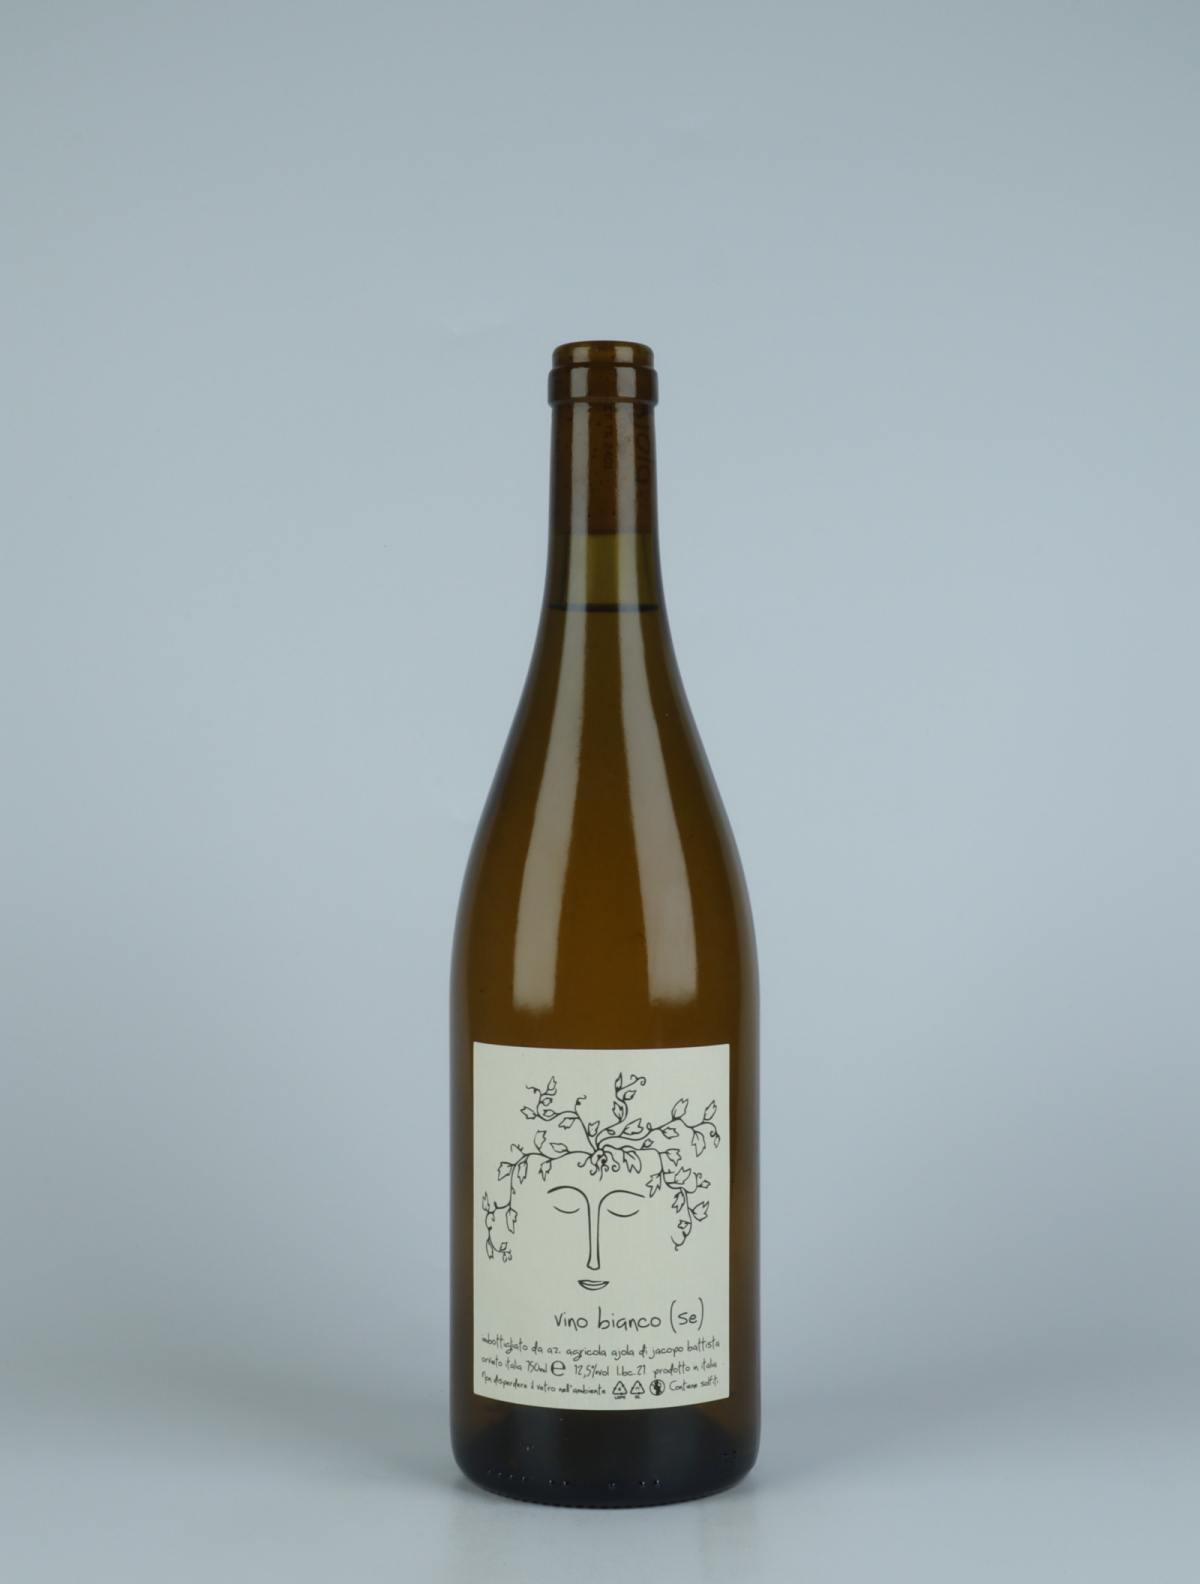 En flaske 2021 Vino Bianco (Se) Orange vin fra Ajola, Umbrien i Italien